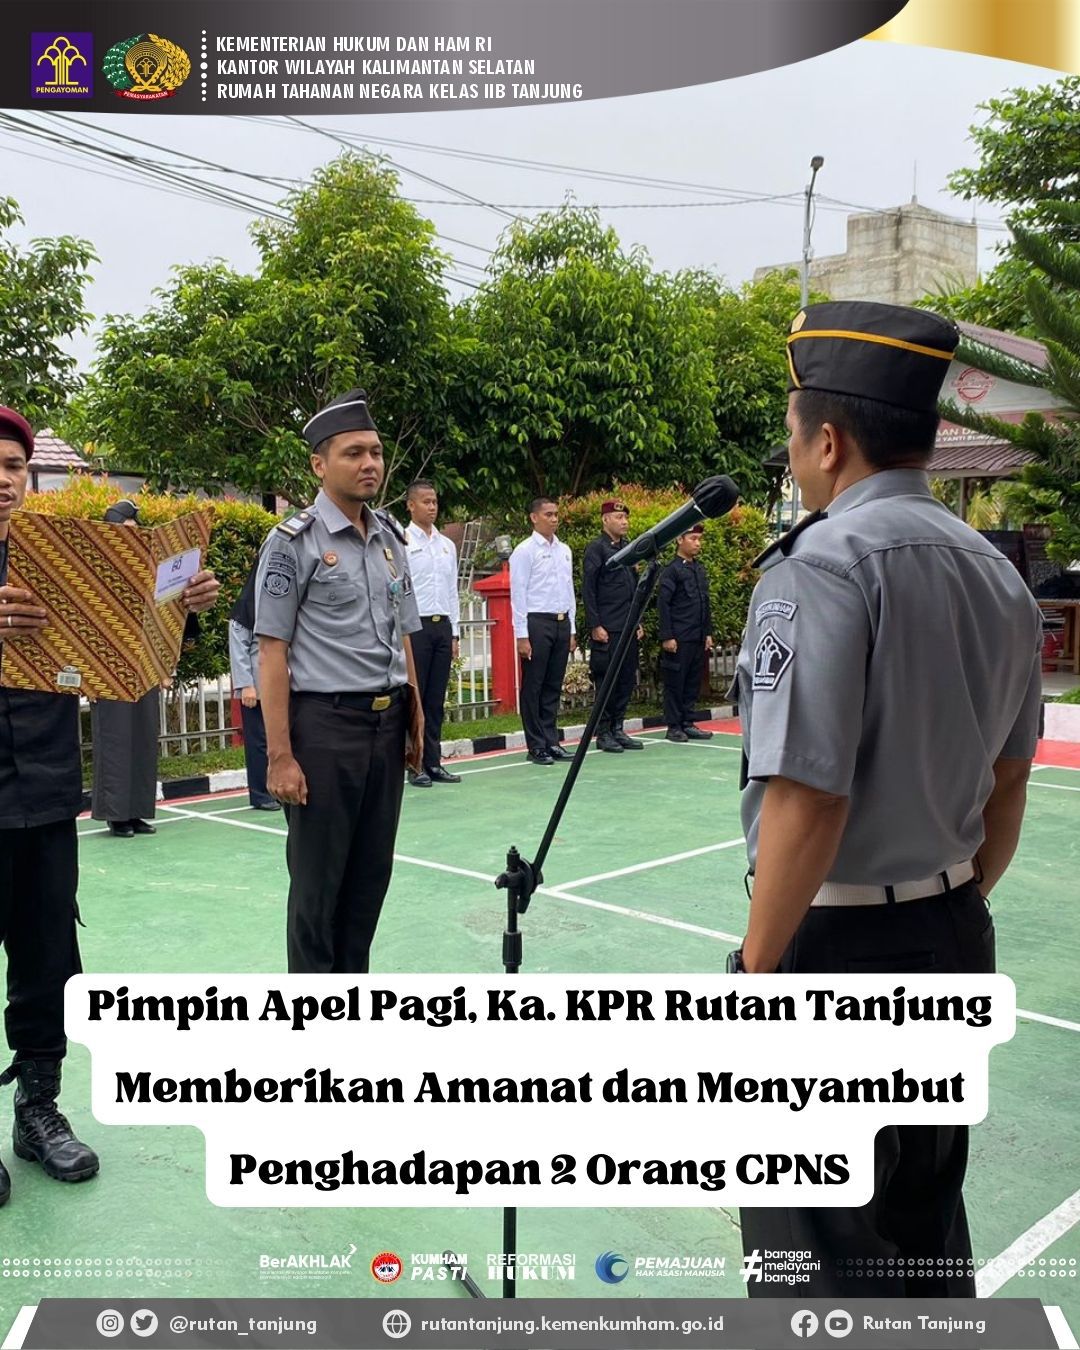 Pimpin Apel Pagi, Ka. KPR Rutan Tanjung Memberikan Amanat dan Menyambut Penghadapan 2 Orang CPNS